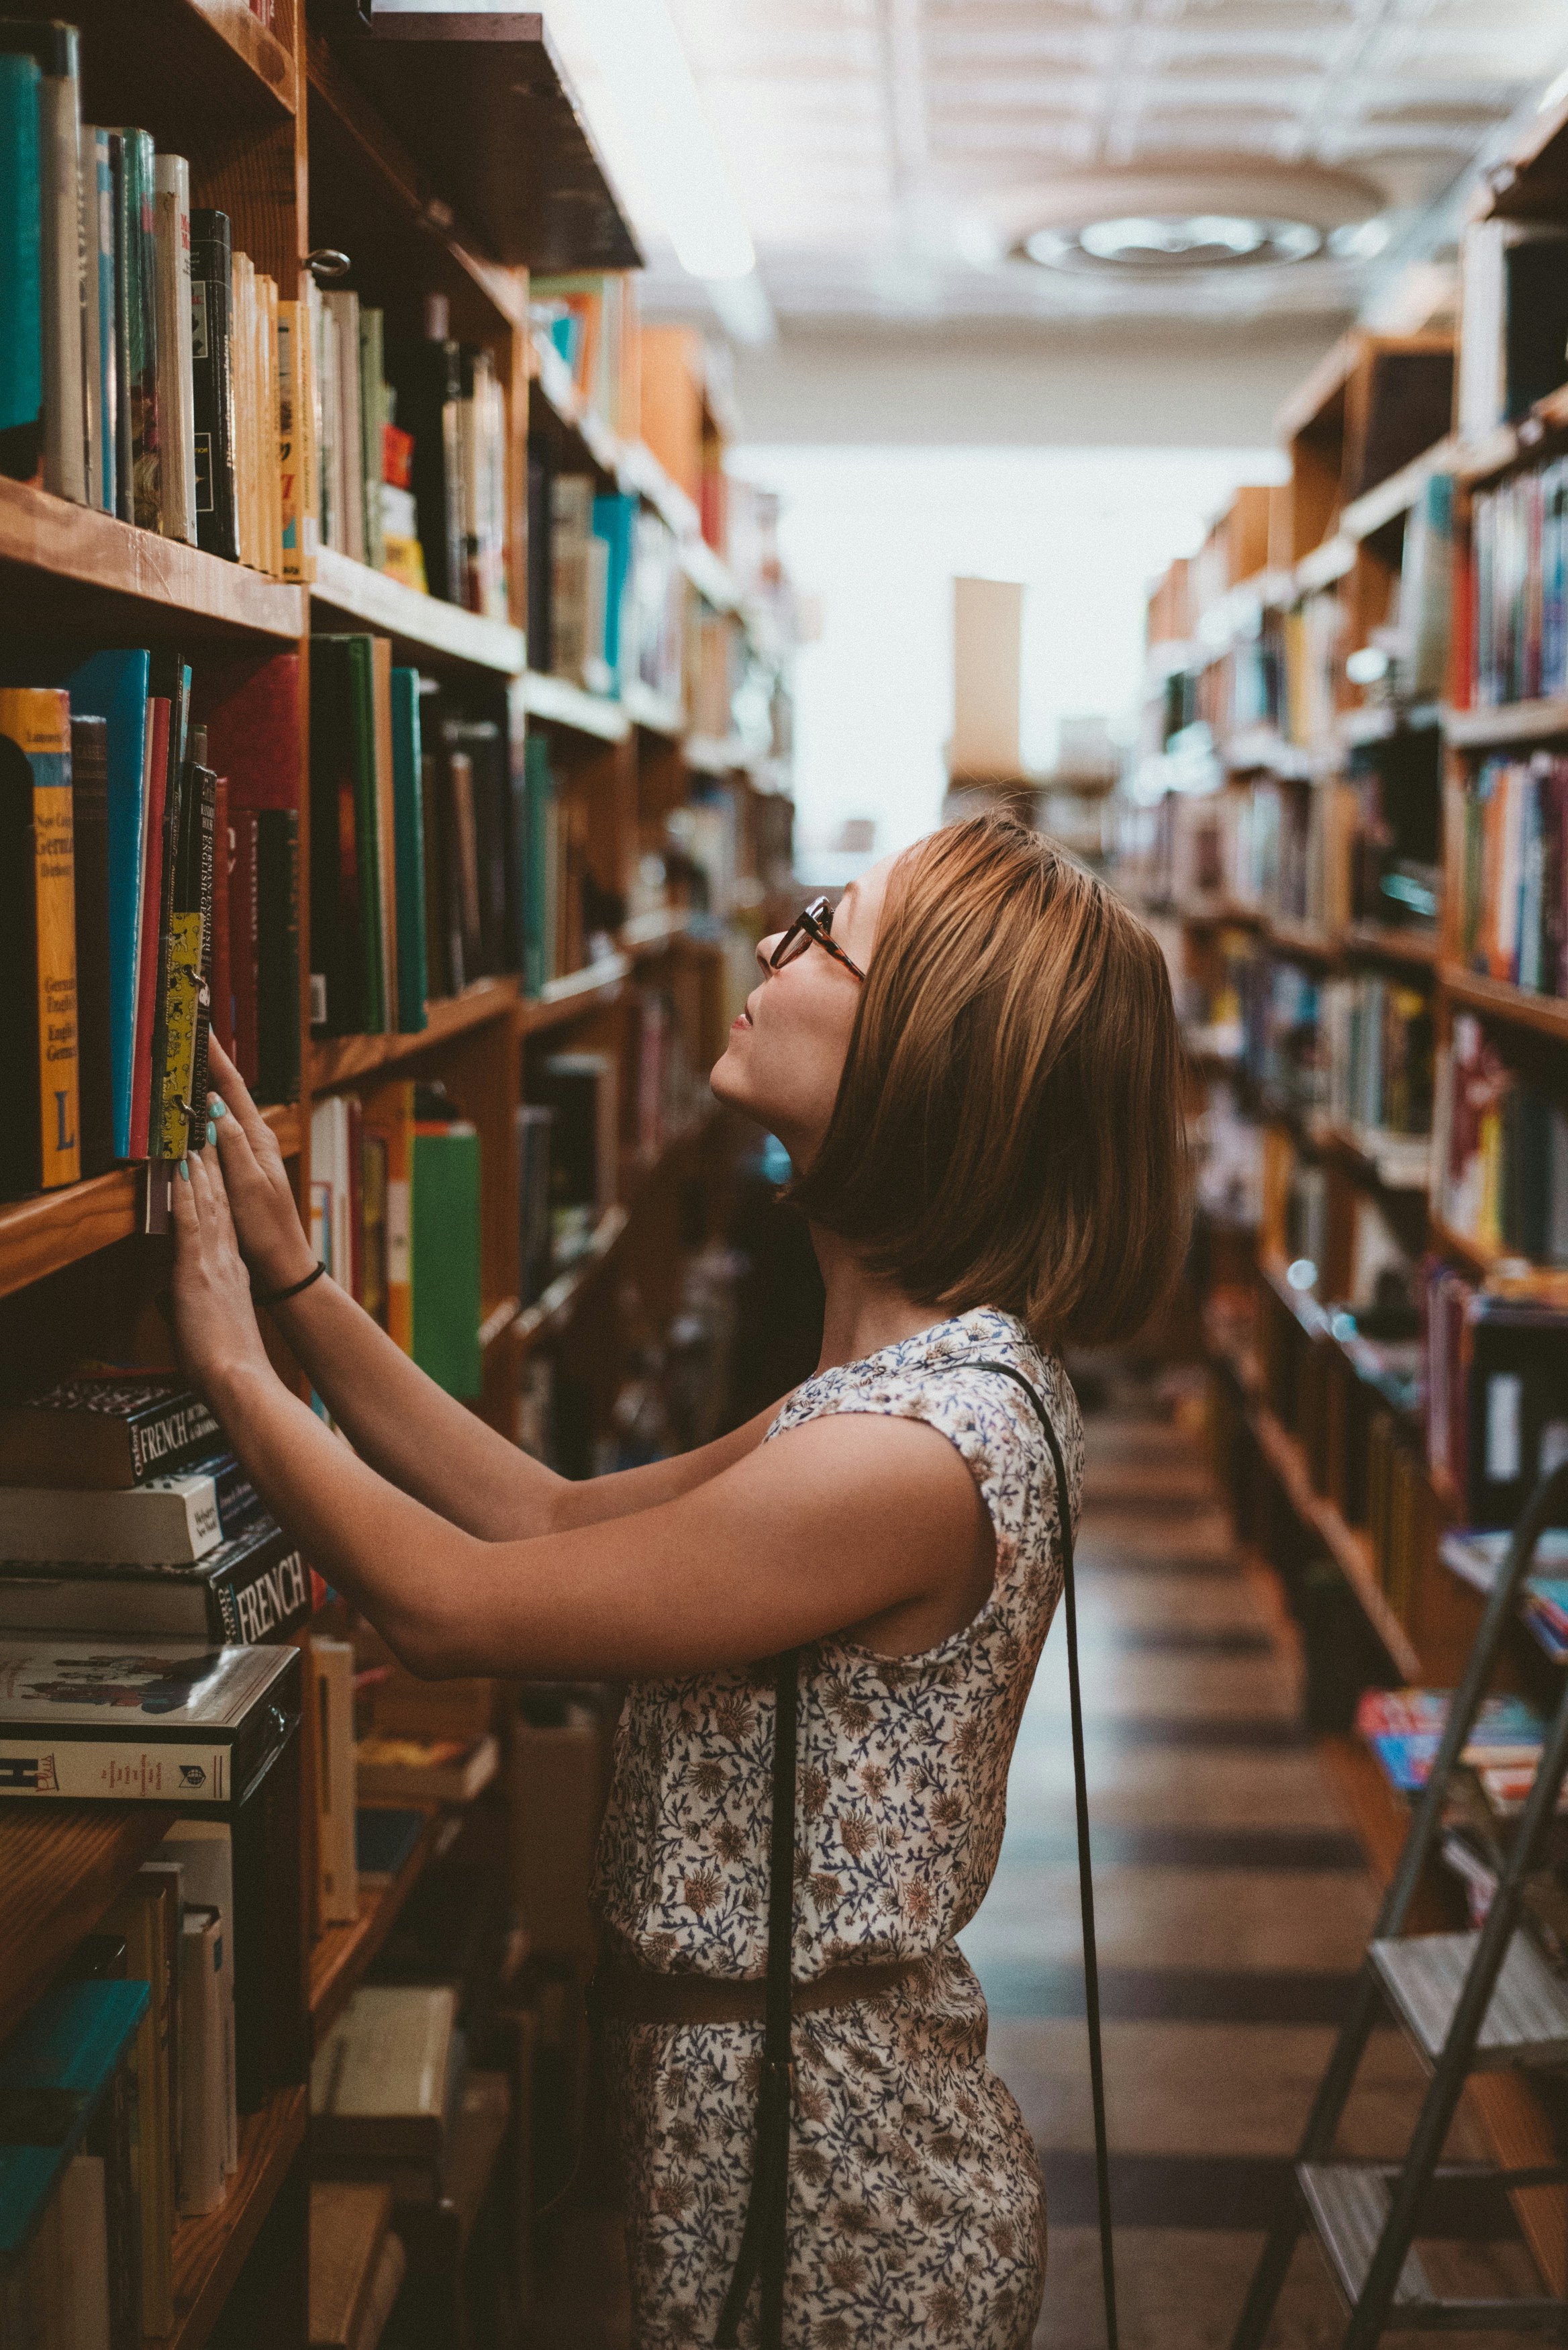 Une femme cherchant un livre dans une bibliothèque | Source : Unsplash